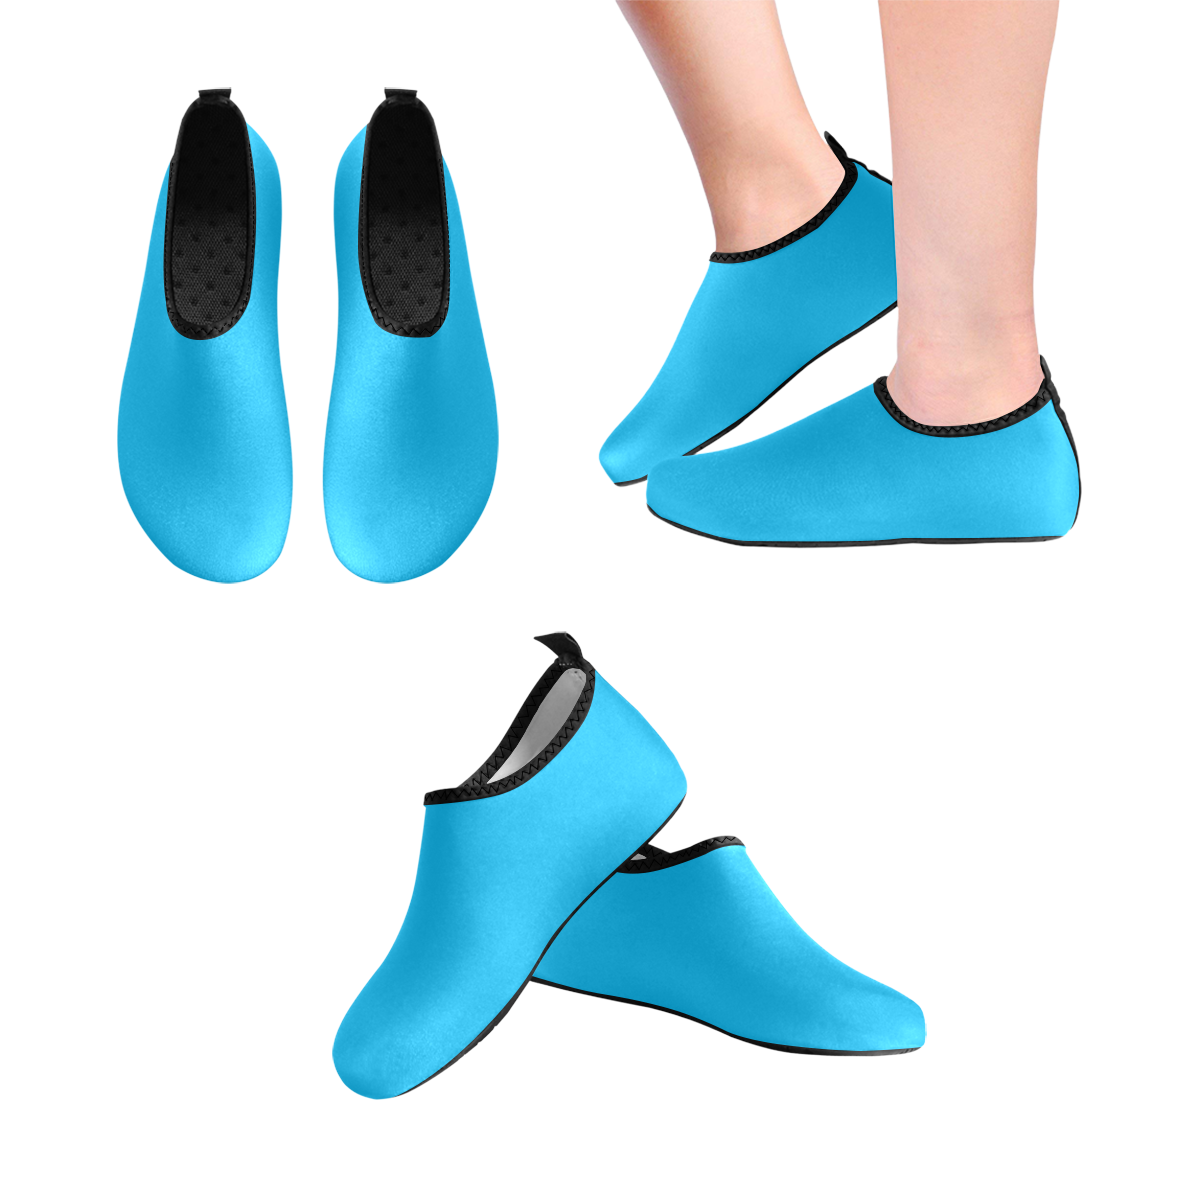 color deep sky blue Men's Slip-On Water Shoes (Model 056)